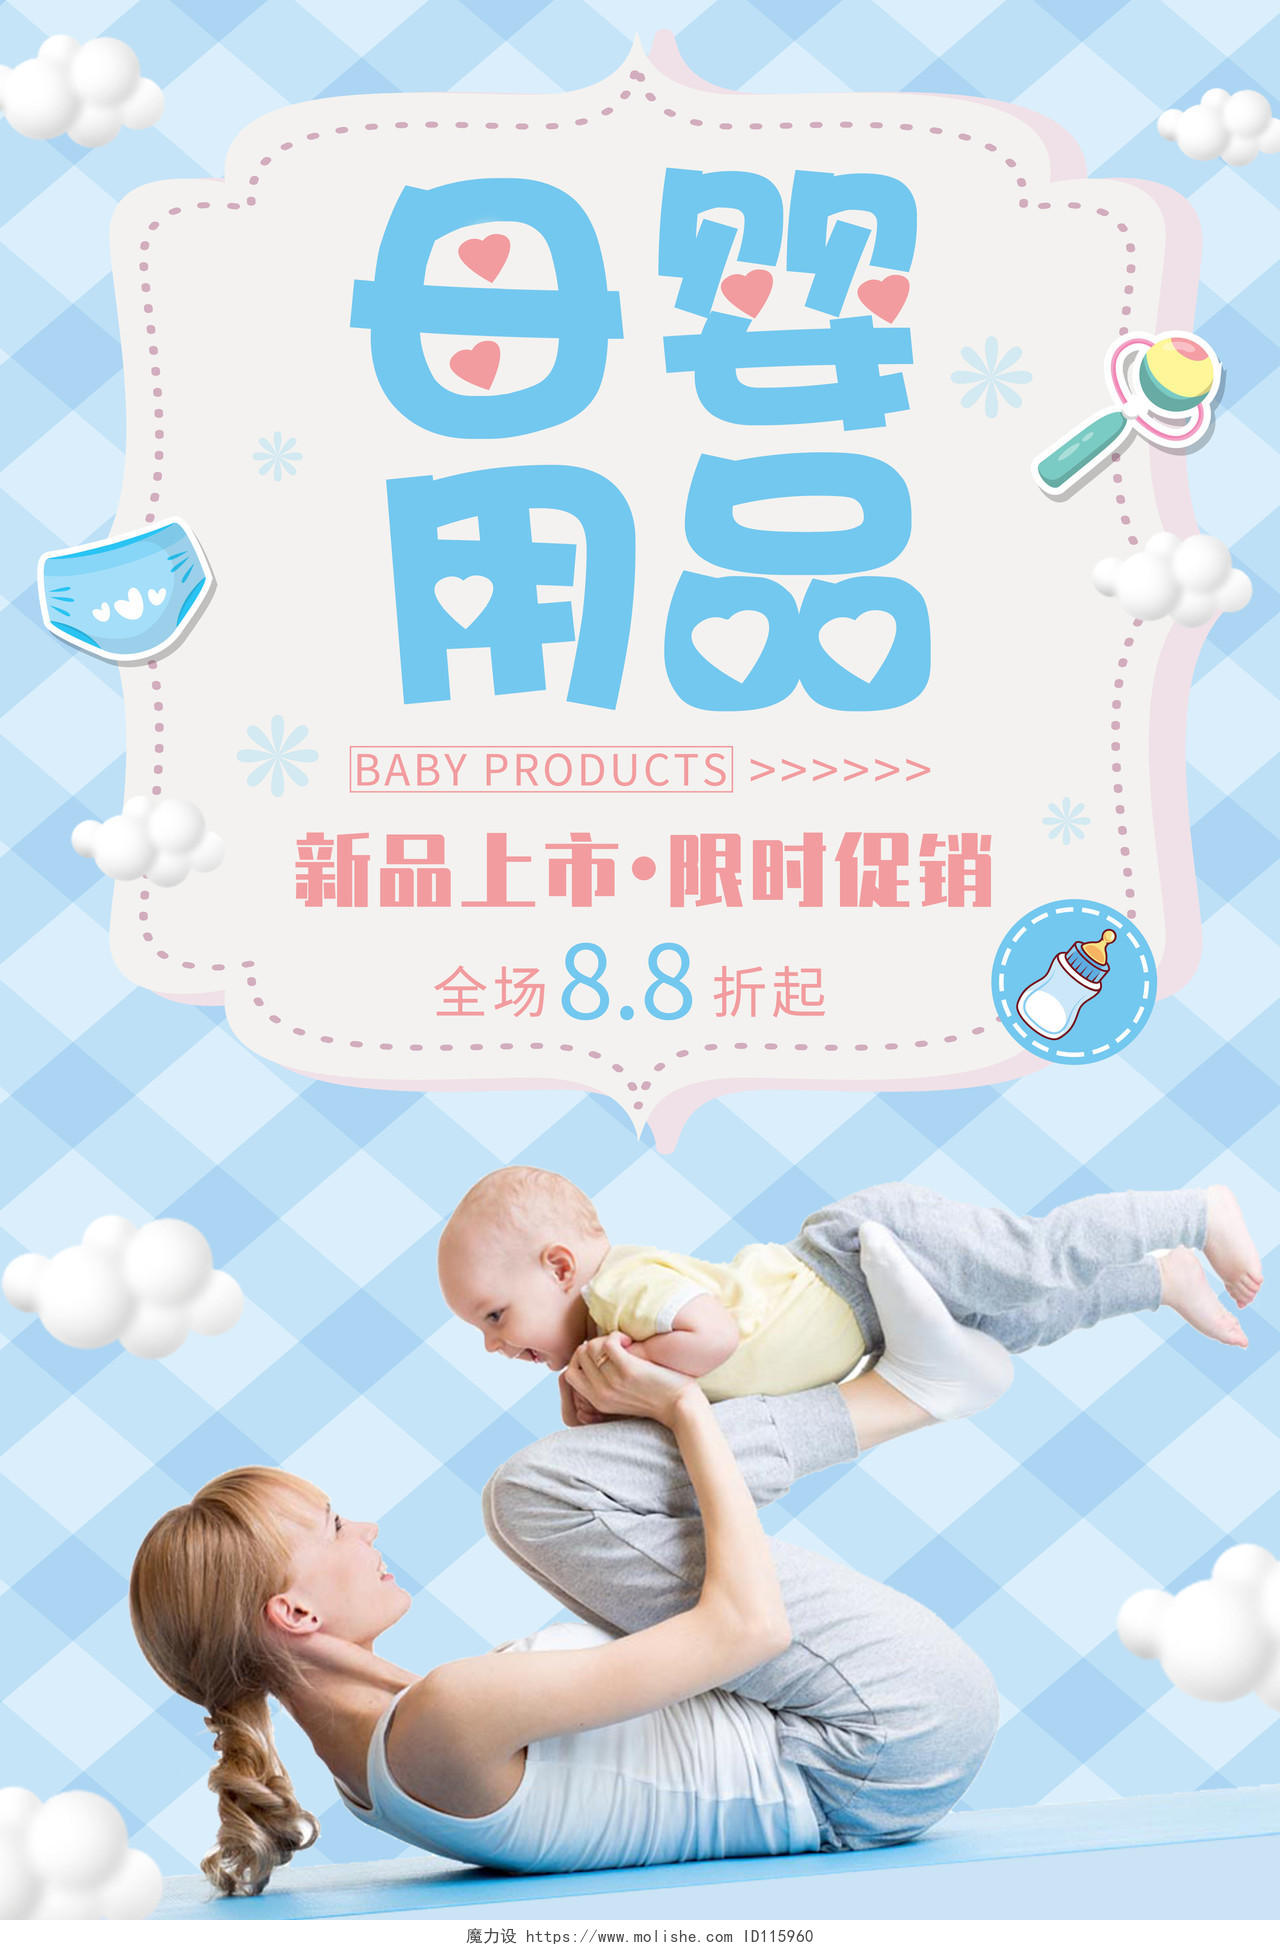 蓝色格子底纹母婴用品促销活动海报